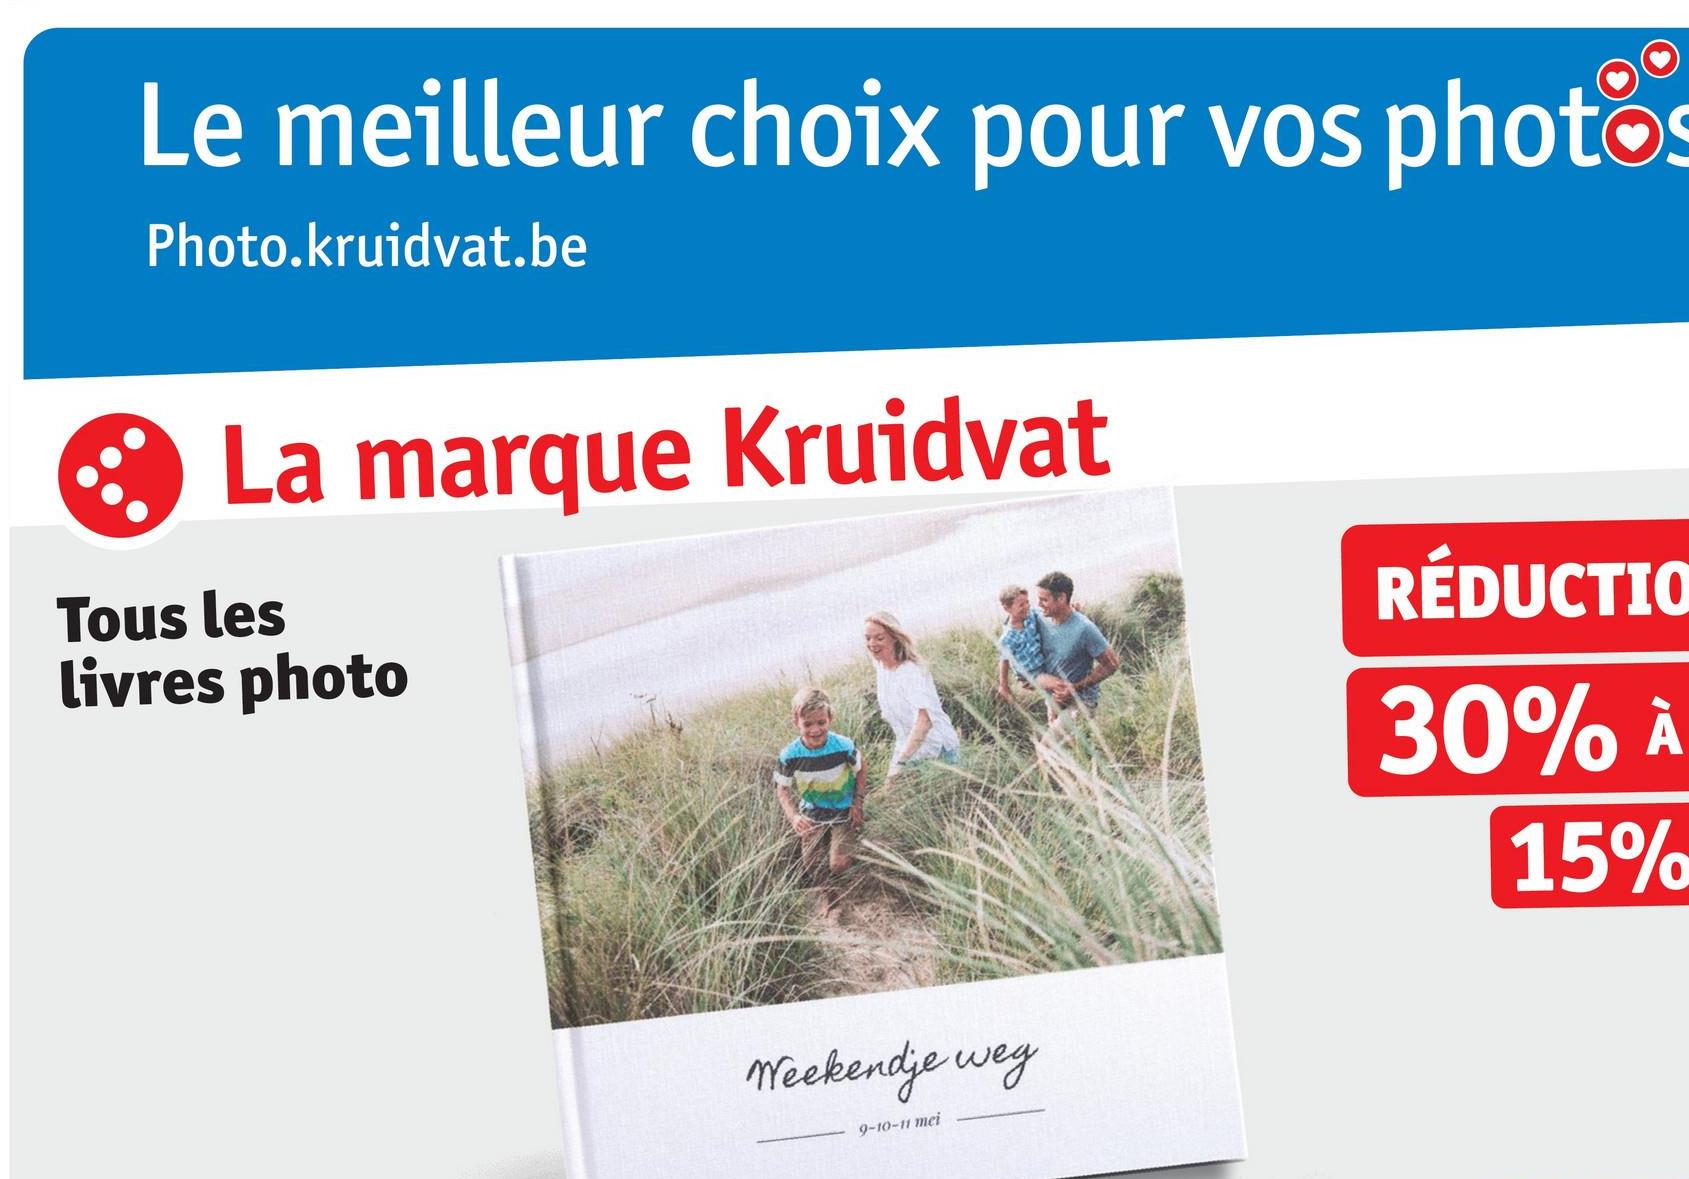 Le meilleur choix pour vos photos
Photo.kruidvat.be
La marque Kruidvat
Tous les
livres photo
Weekendje weg
9-10-11 mei
RÉDUCTIO
30% À
15%